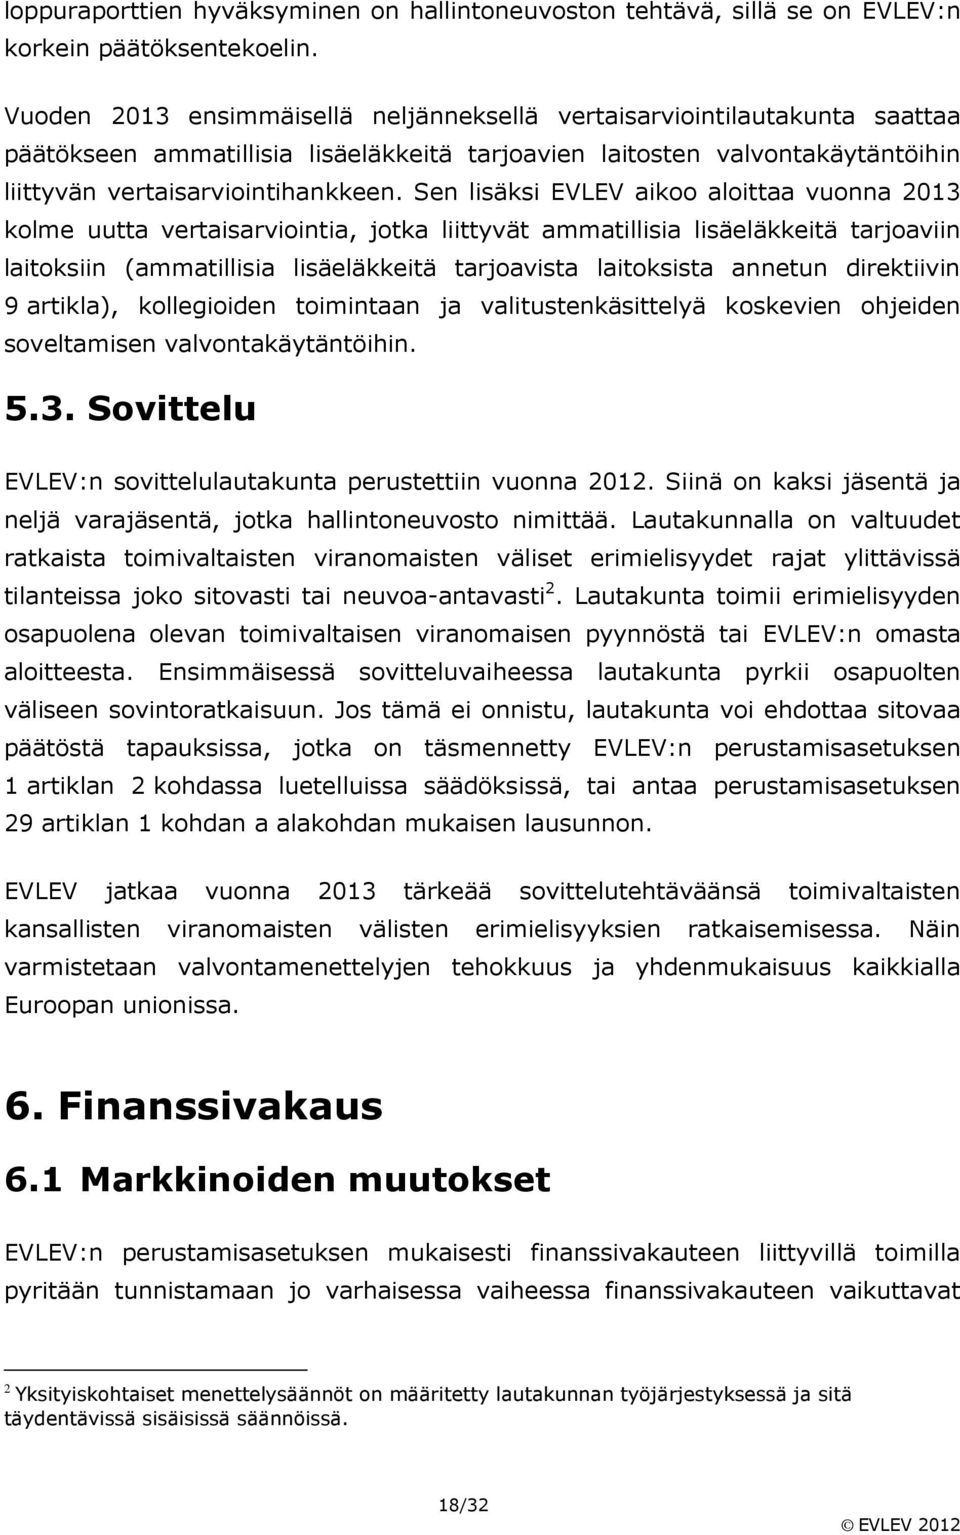 Sen lisäksi EVLEV aikoo aloittaa vuonna 2013 kolme uutta vertaisarviointia, jotka liittyvät ammatillisia lisäeläkkeitä tarjoaviin laitoksiin (ammatillisia lisäeläkkeitä tarjoavista laitoksista